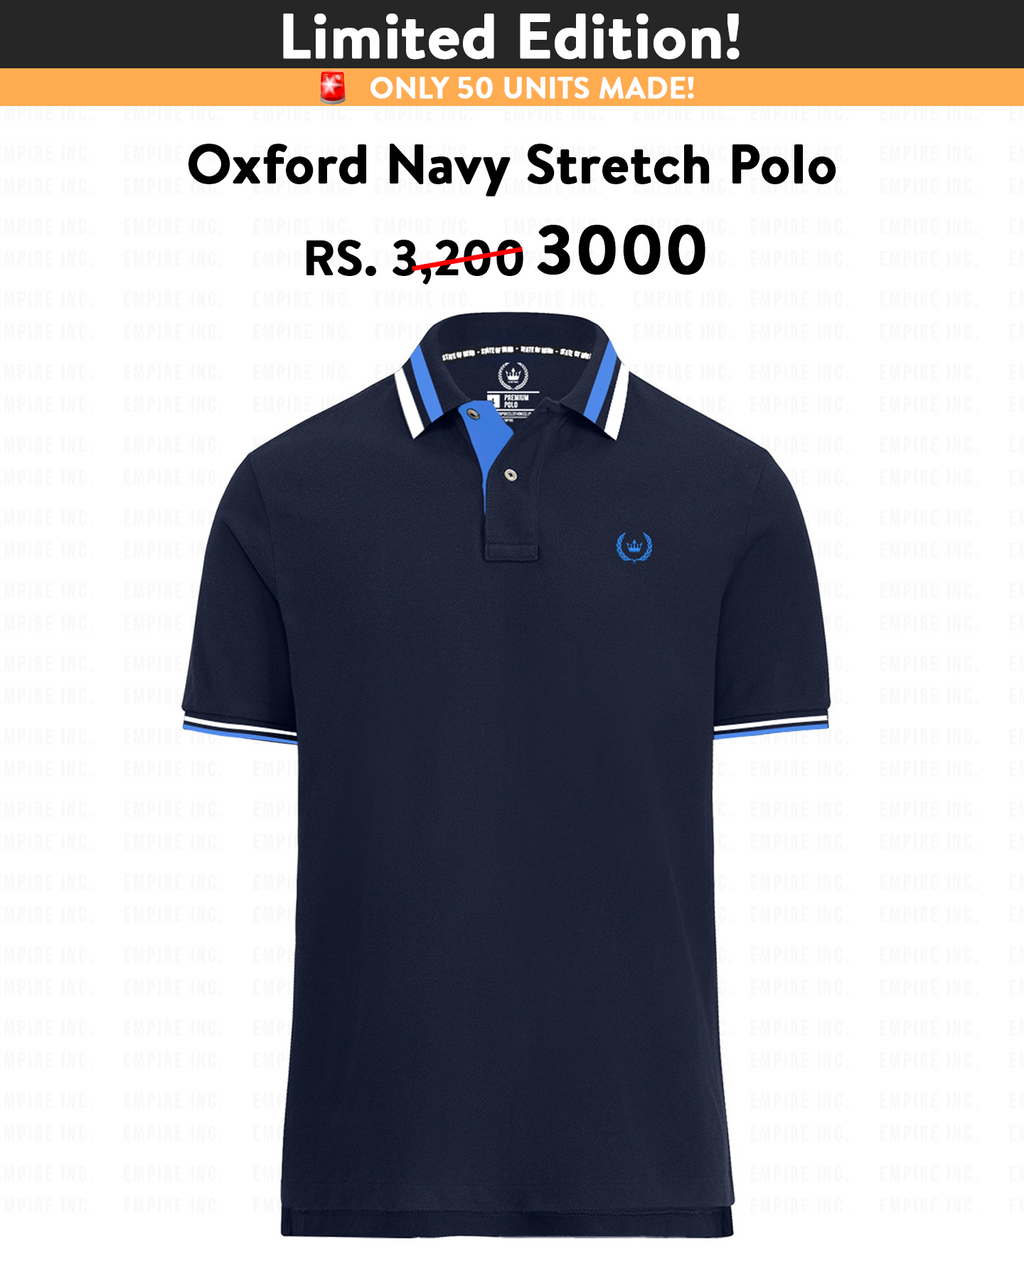 Oxford Navy Stretch Polo